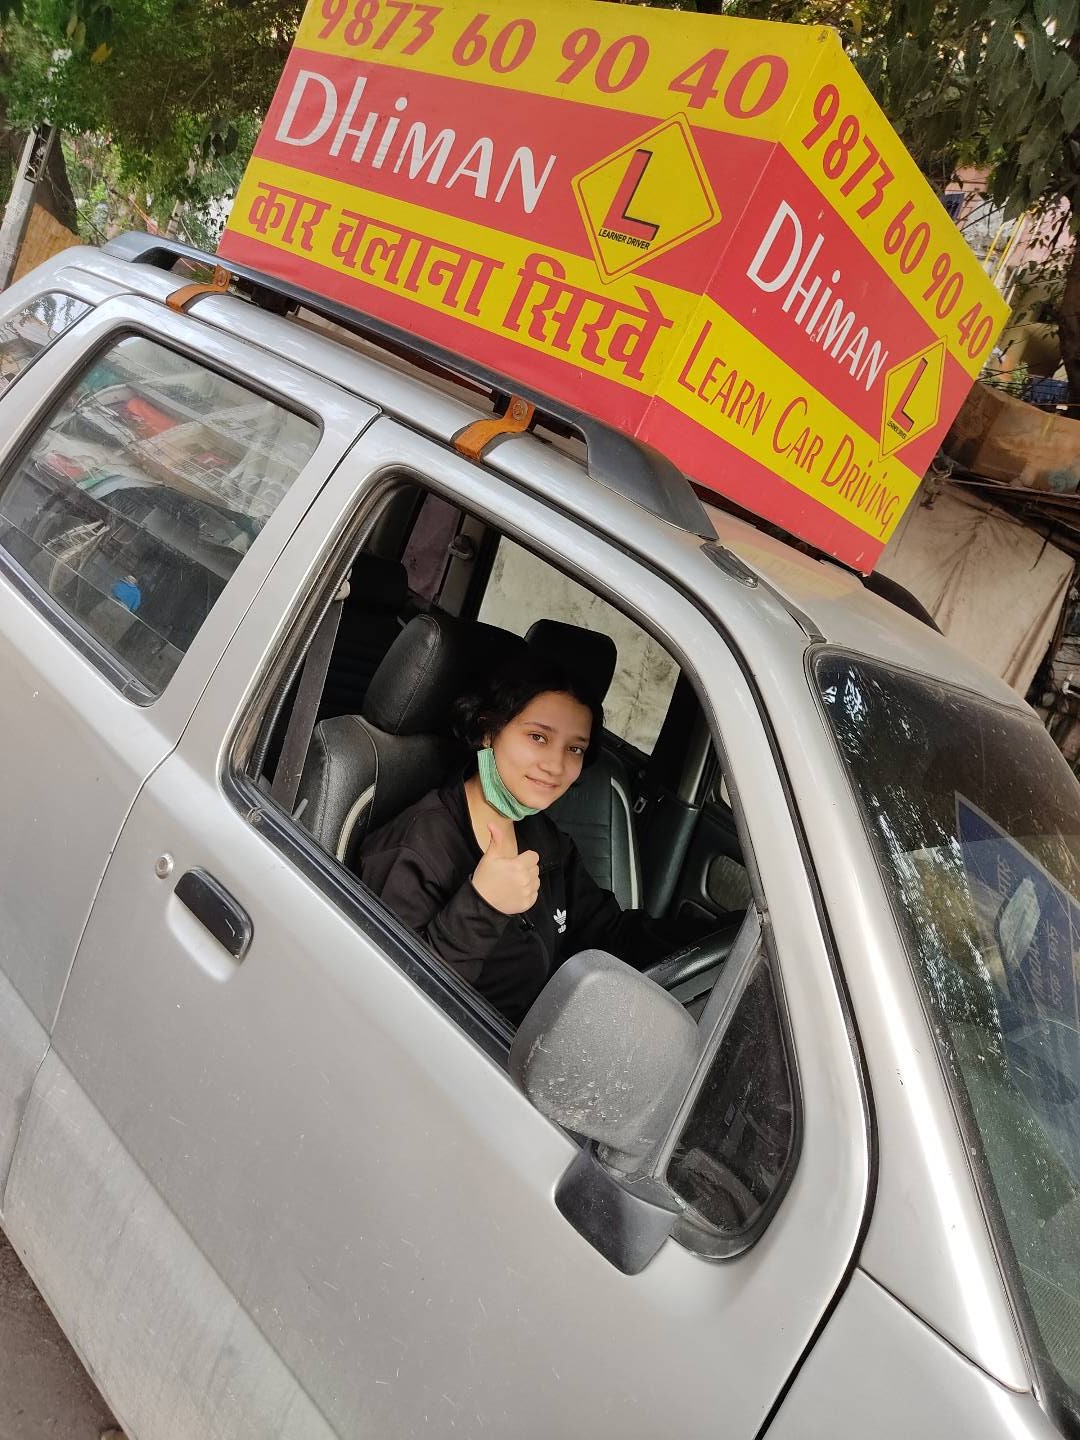 Dhiman Driving School